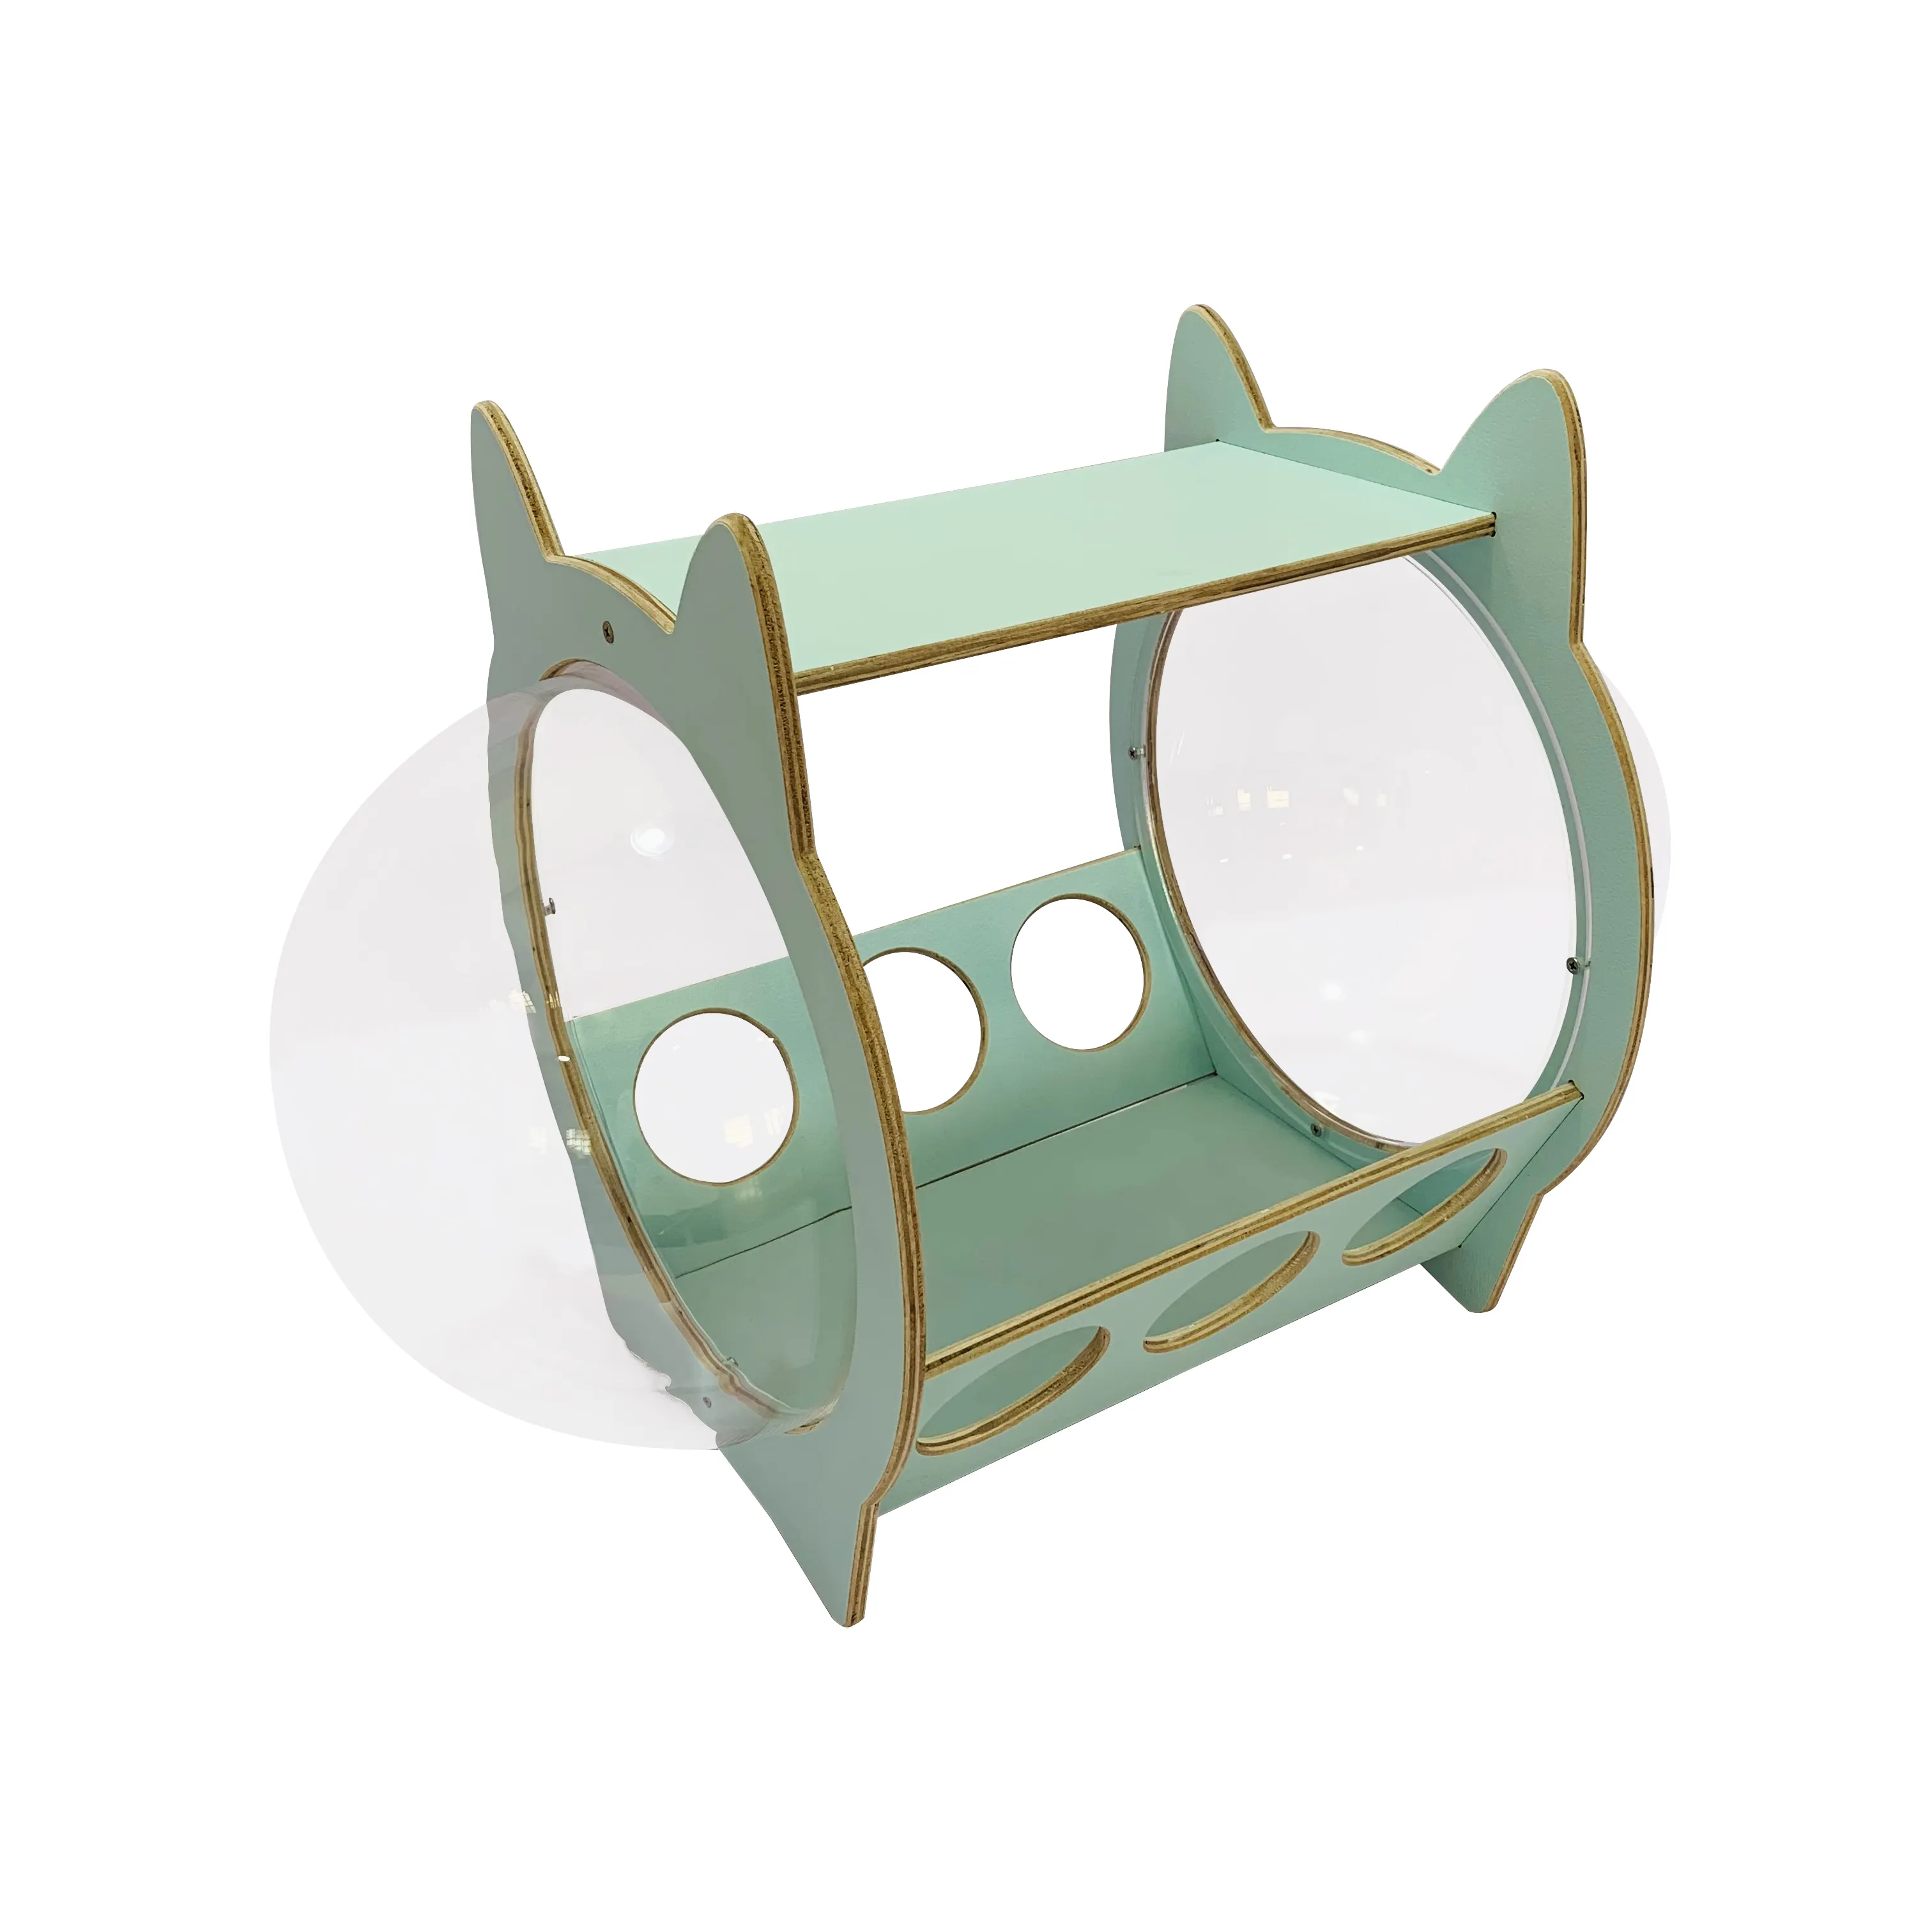 Vendite calde moderno acrilico capsula spaziale lettiera per gatti casa creativa forma carina in legno letto per gatti per animali domestici cani